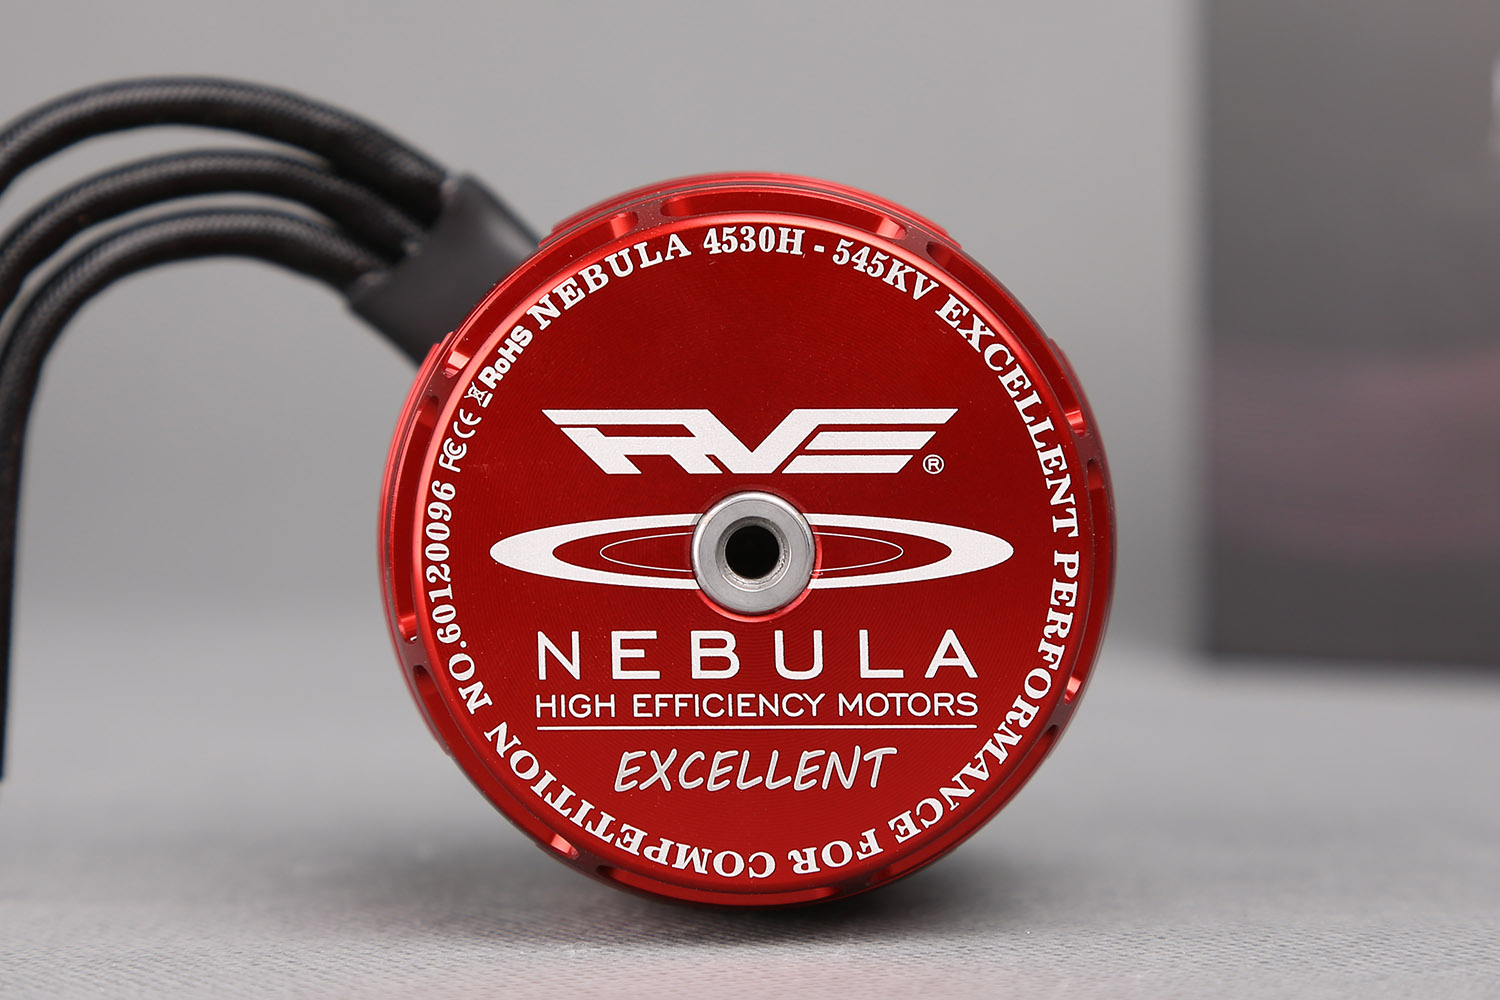 NEBULA 4530H-545KV 卓越版高功率马达 MK50007(图4)